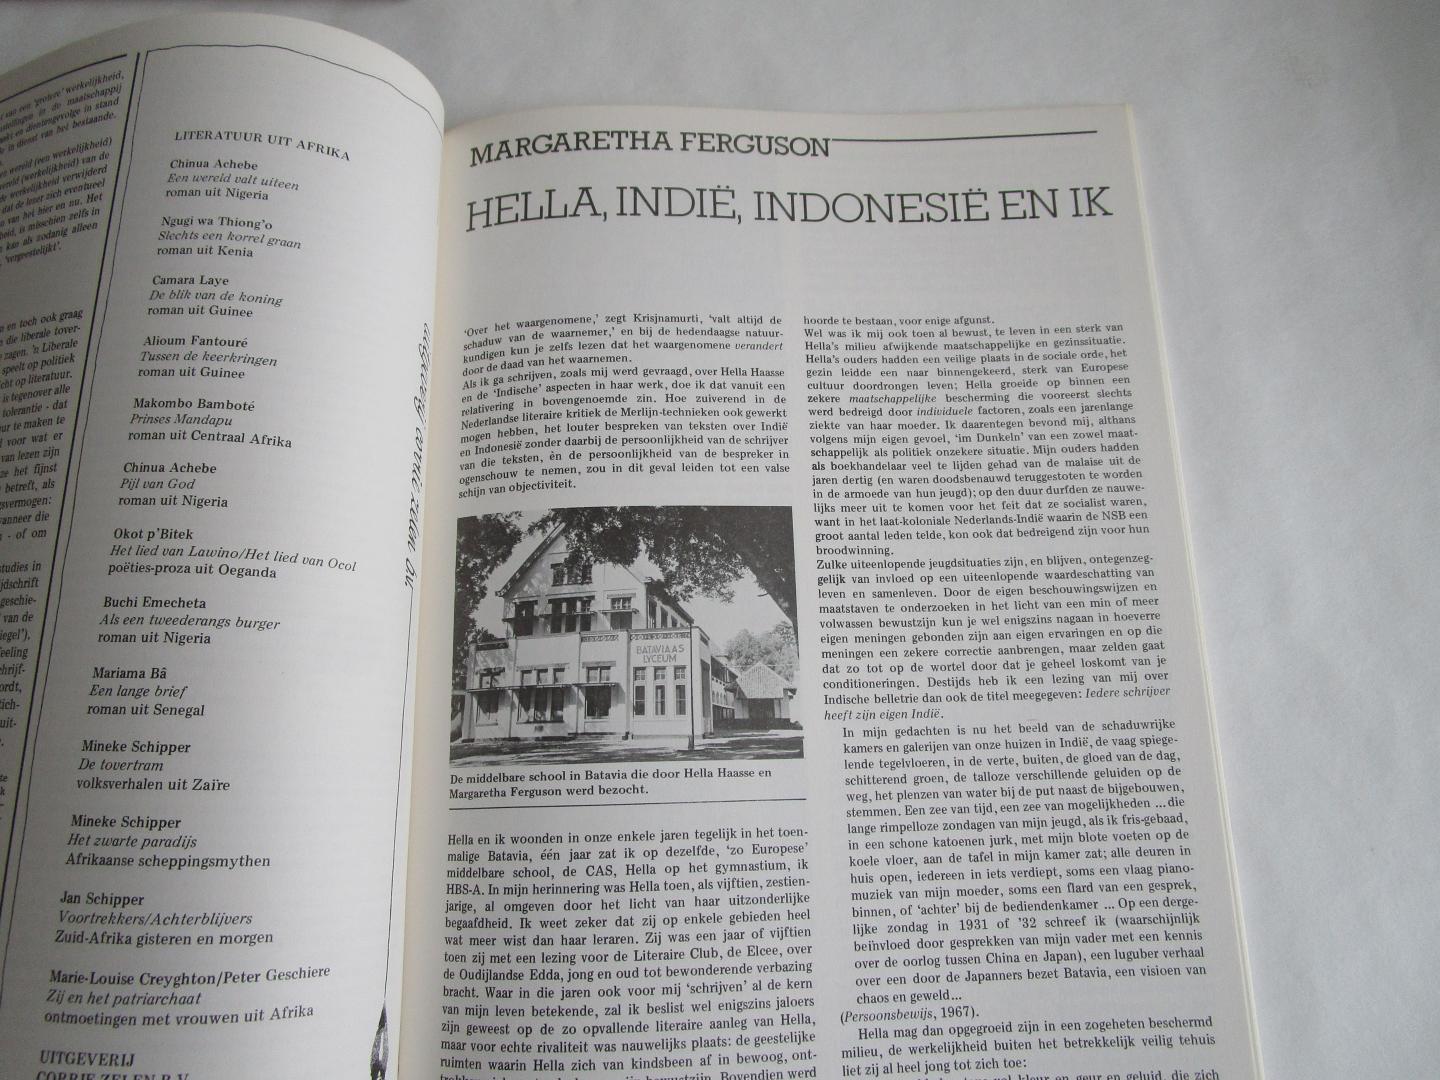 Haase, Hella S. (dit hele magazine over deze schrijfster) - BZZLLETIN 91 Hella S. Haasse